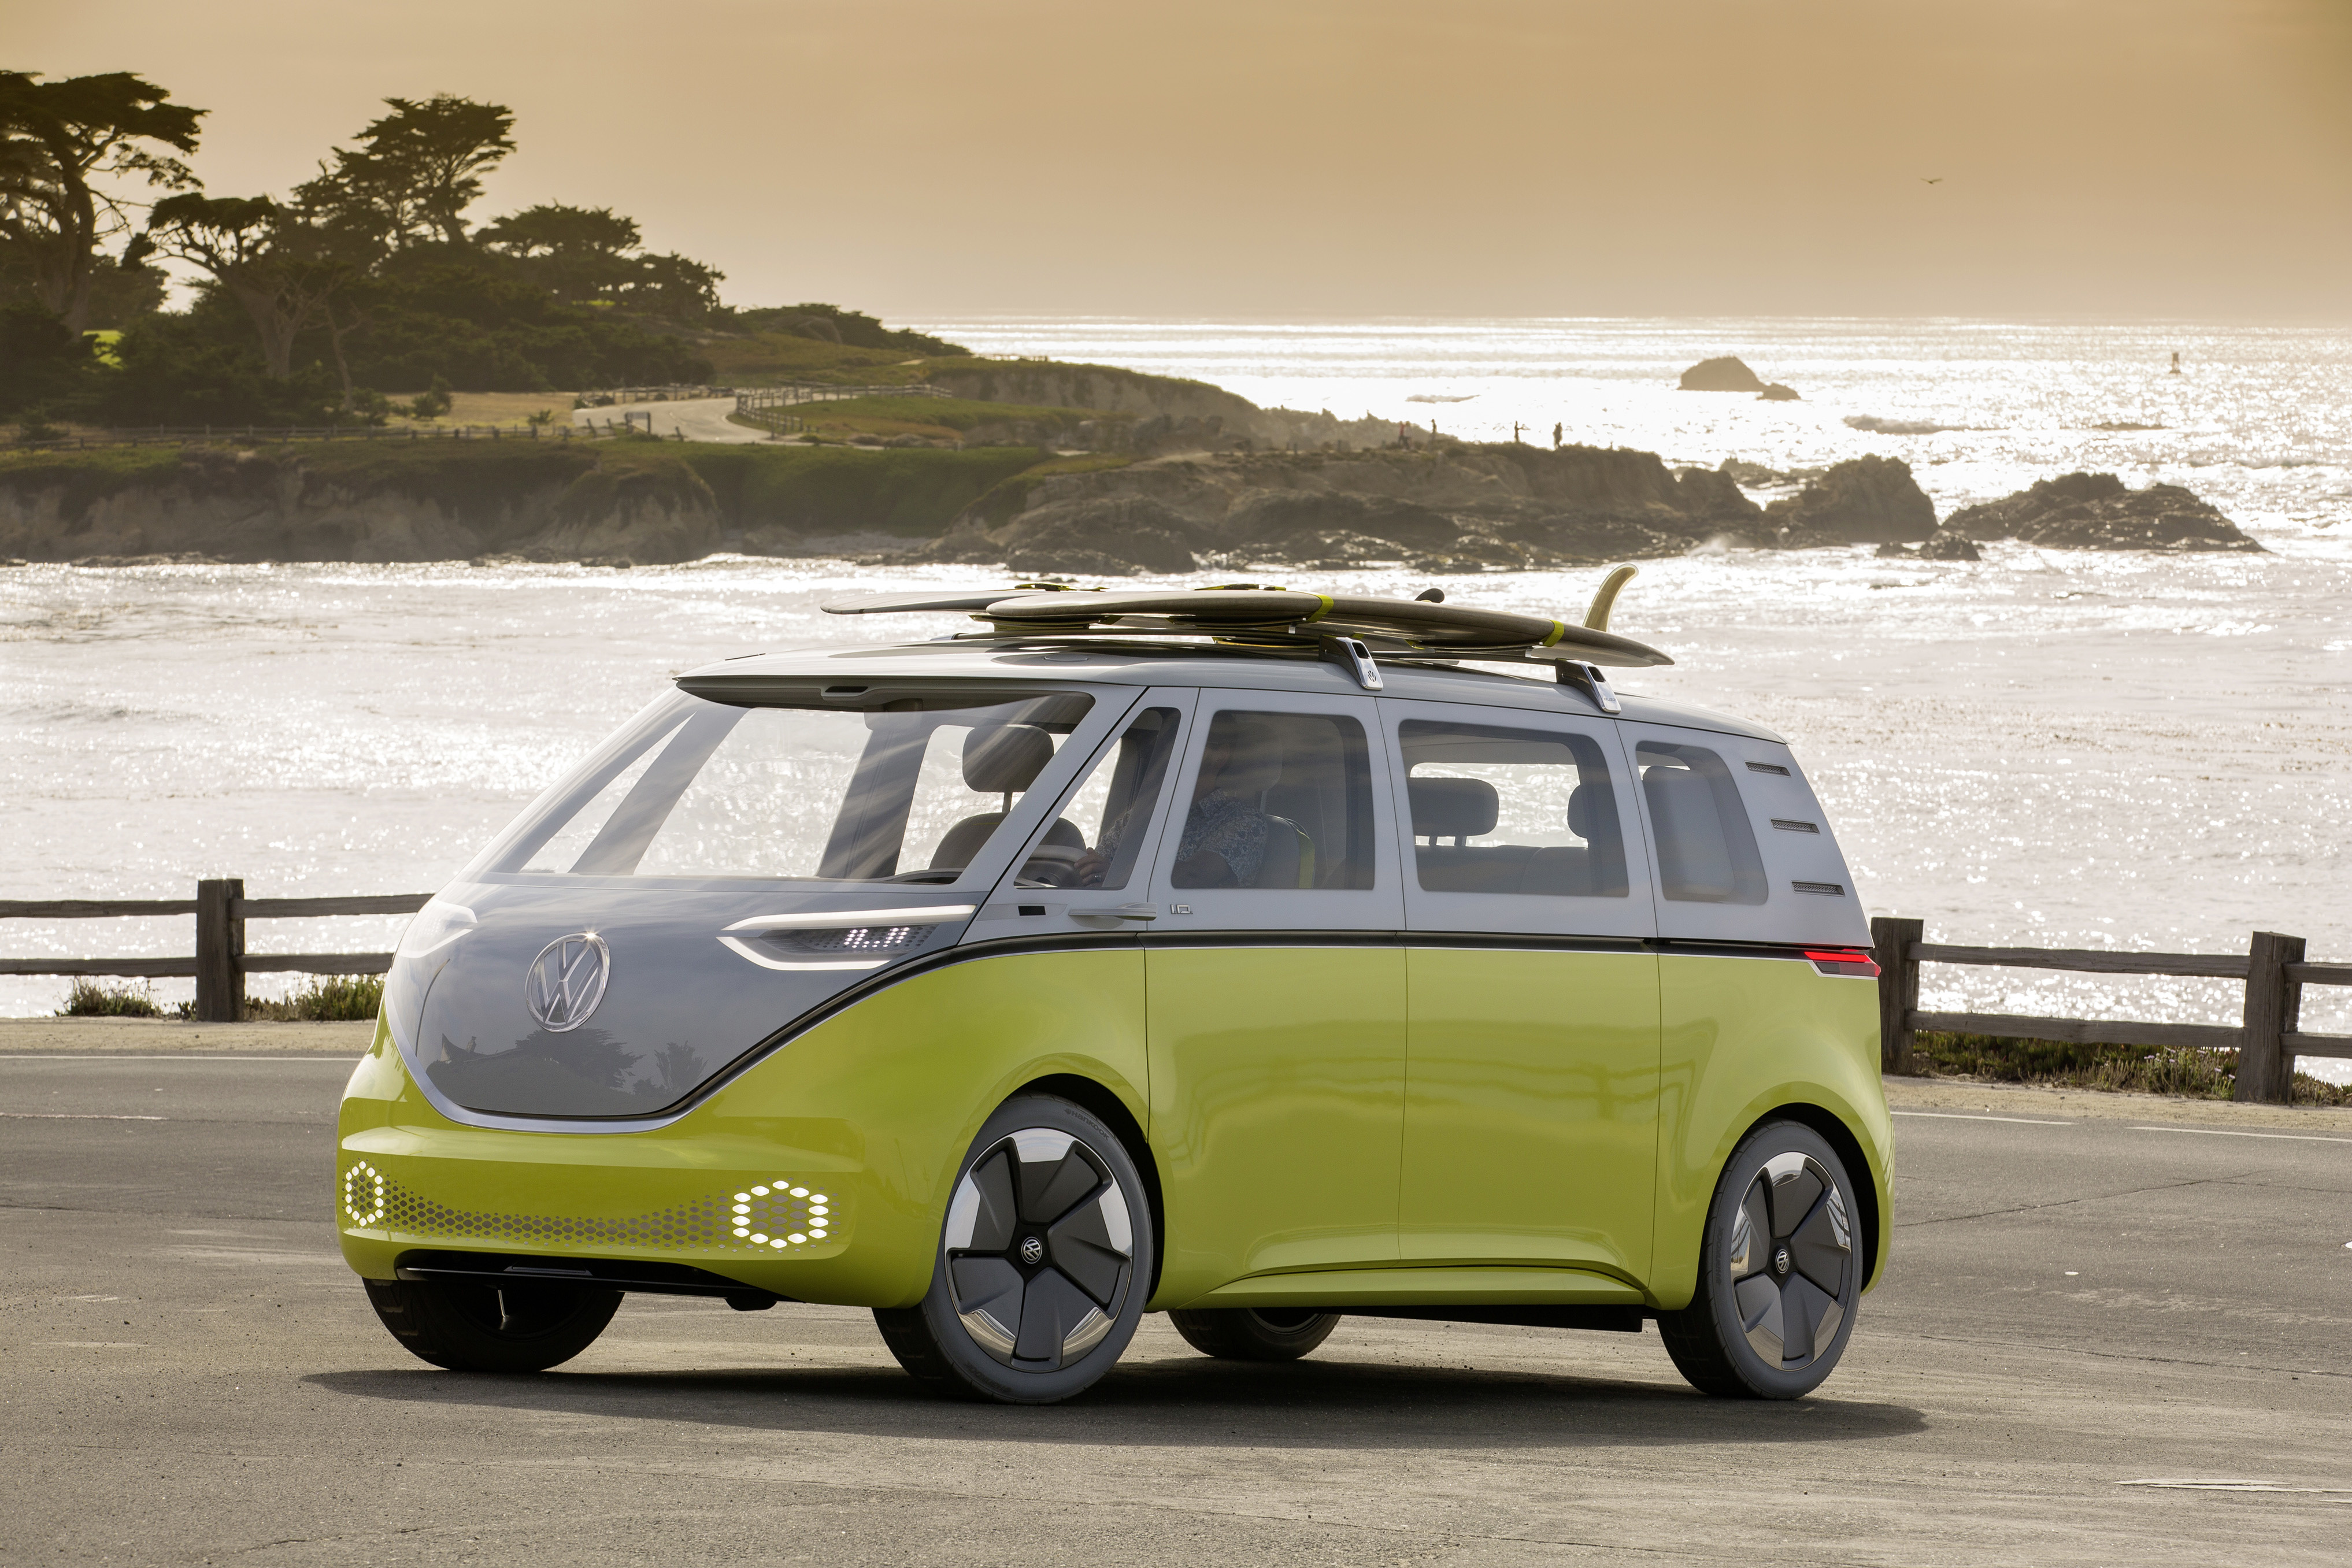 Volkswagenov I.D. Buzz je automobil koji se zasniva na konceptu legendarnog VW Microbusa, najpoznatijeg kao simbola hipijevskog pokreta. Međutim, osvježen je za 21. stoljeće, a ovaj model je zaista ekološki prihvatljiv. Naravno, radi se o elektromobilu, s kapacitetom baterije od 111 kWh, što mu daje domet od oko 600 kilometara. U prodaju neće stići prije 2022. godine, a cijena je još uvijek nepoznanica. I.D. Buzz je jedan od automobila koji se temelji na VW-ovoj platformi naziva MEB, odnosno, na bazi na kojoj će, kako kažu, predstaviti oko 10 modela 2025. godine. Do 2030. godine, trebali bi imati ukupno 300 modela na ovoj bazi, raspoređenih na svih svojih 12 brendova.